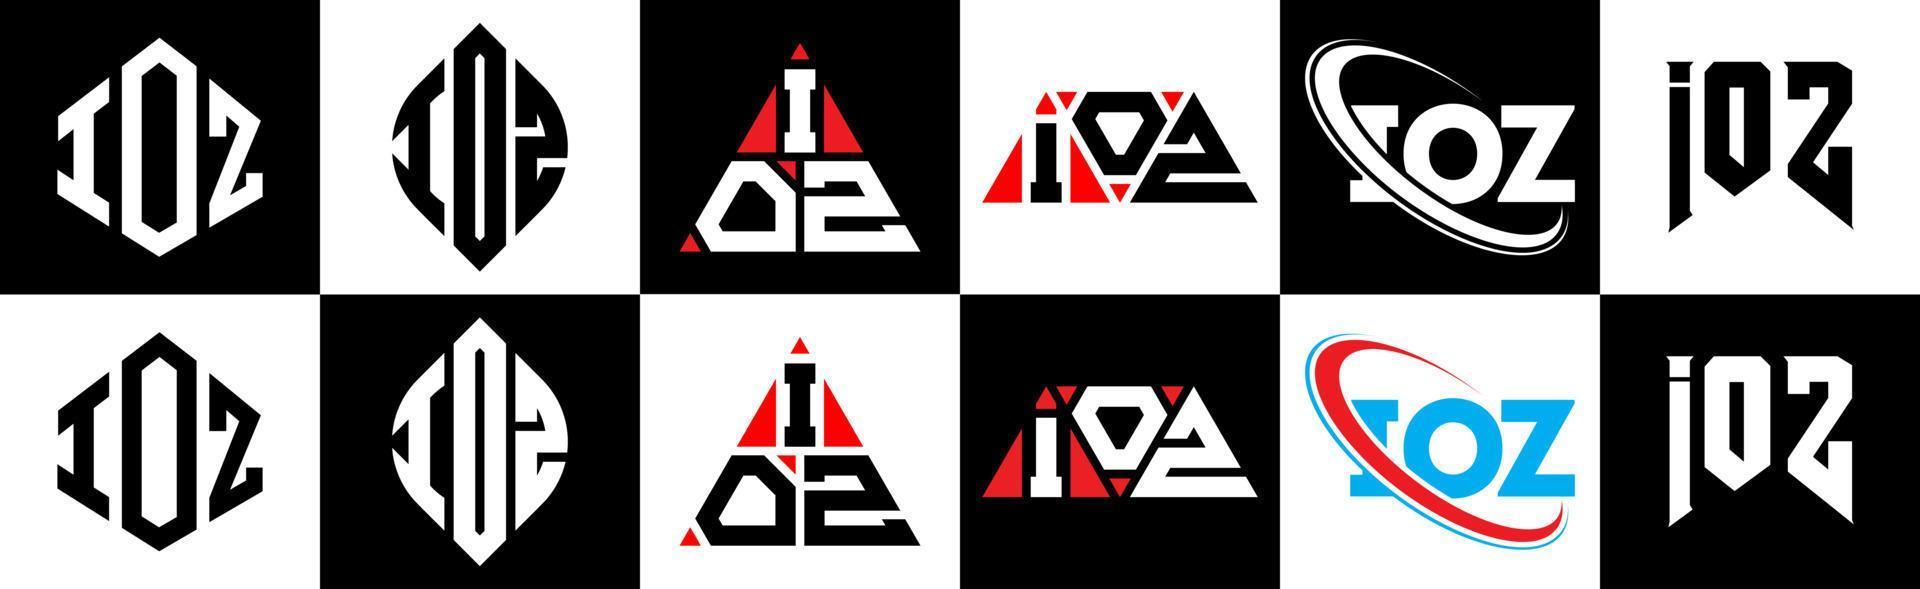 création de logo de lettre ioz en six styles. ioz polygone, cercle, triangle, hexagone, style plat et simple avec logo de lettre de variation de couleur noir et blanc dans un plan de travail. logo minimaliste et classique ioz vecteur